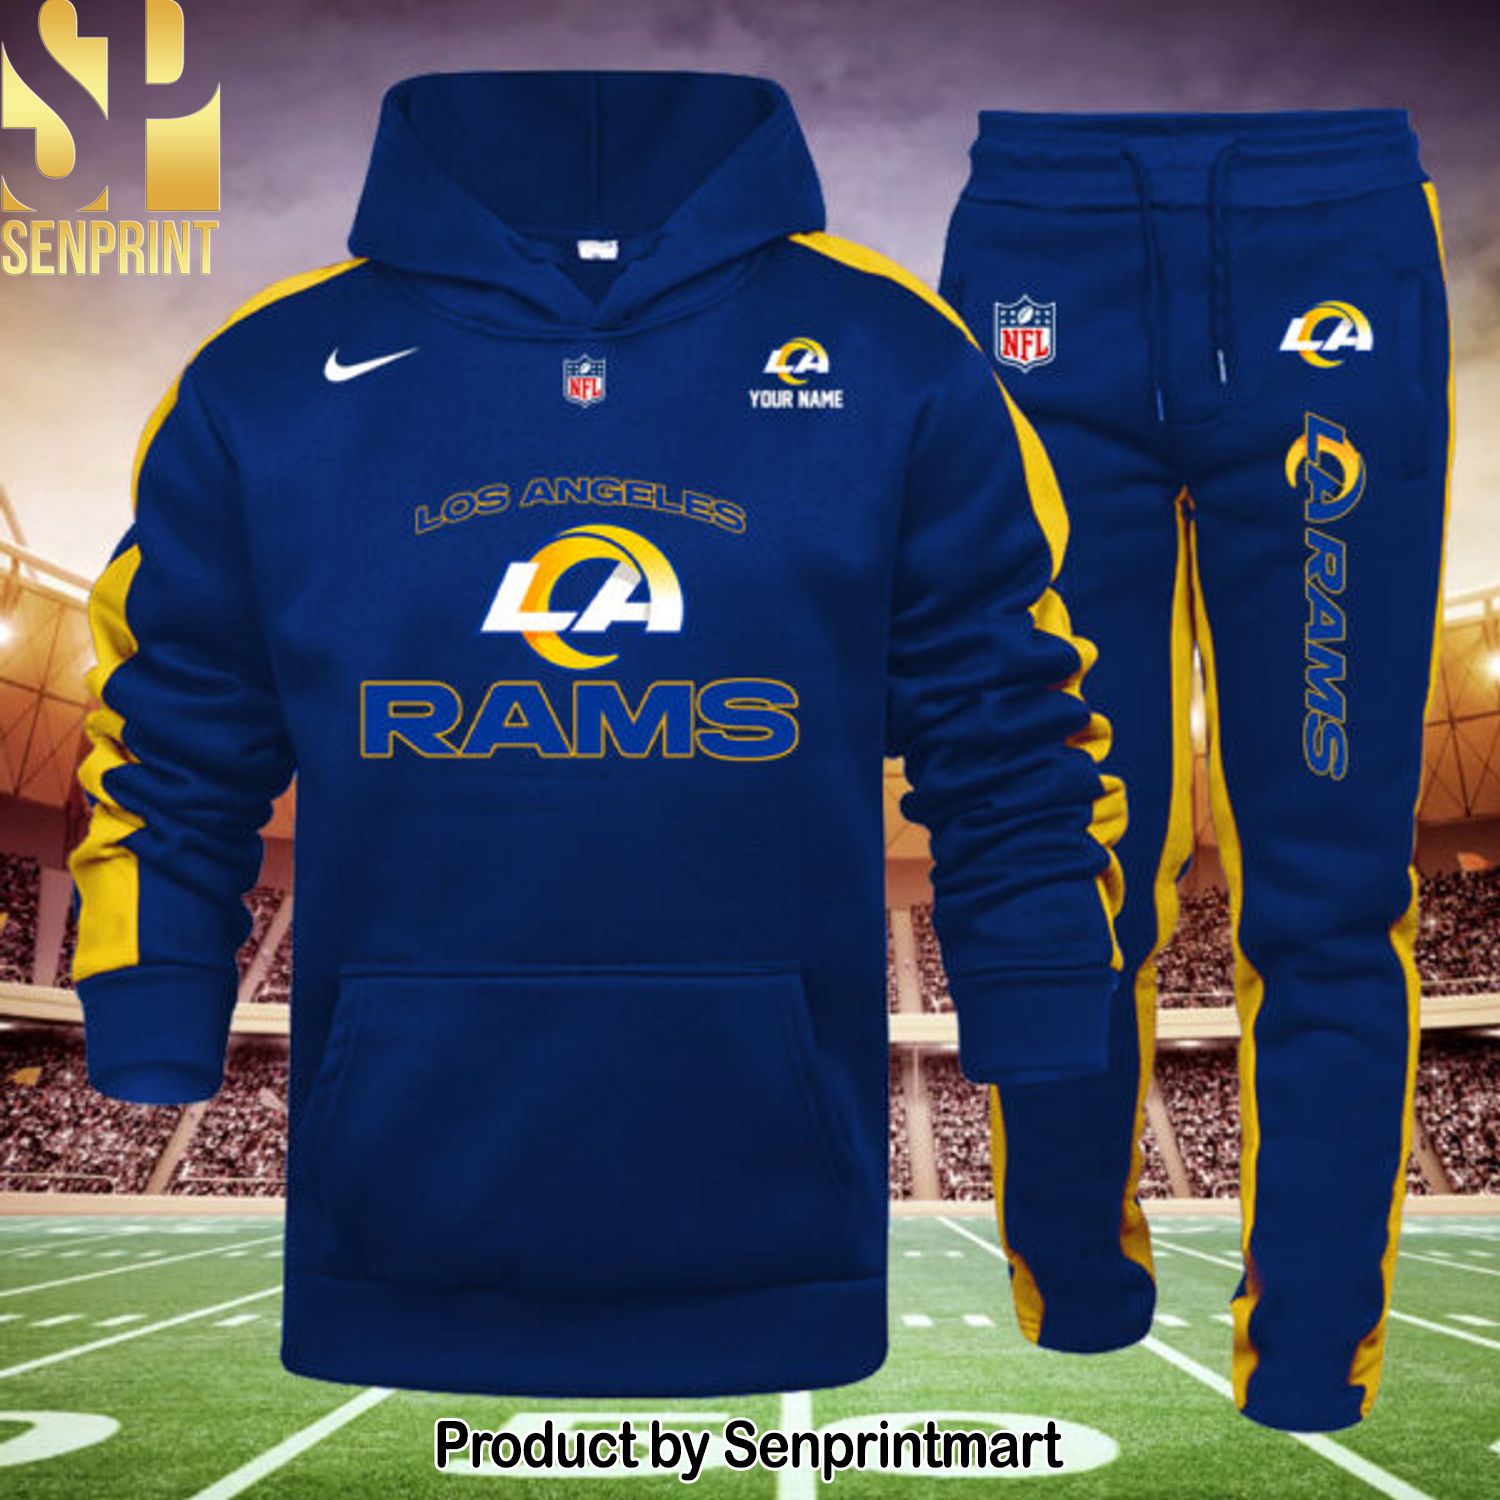 Los Angeles Rams Hot Version Shirt and Pants